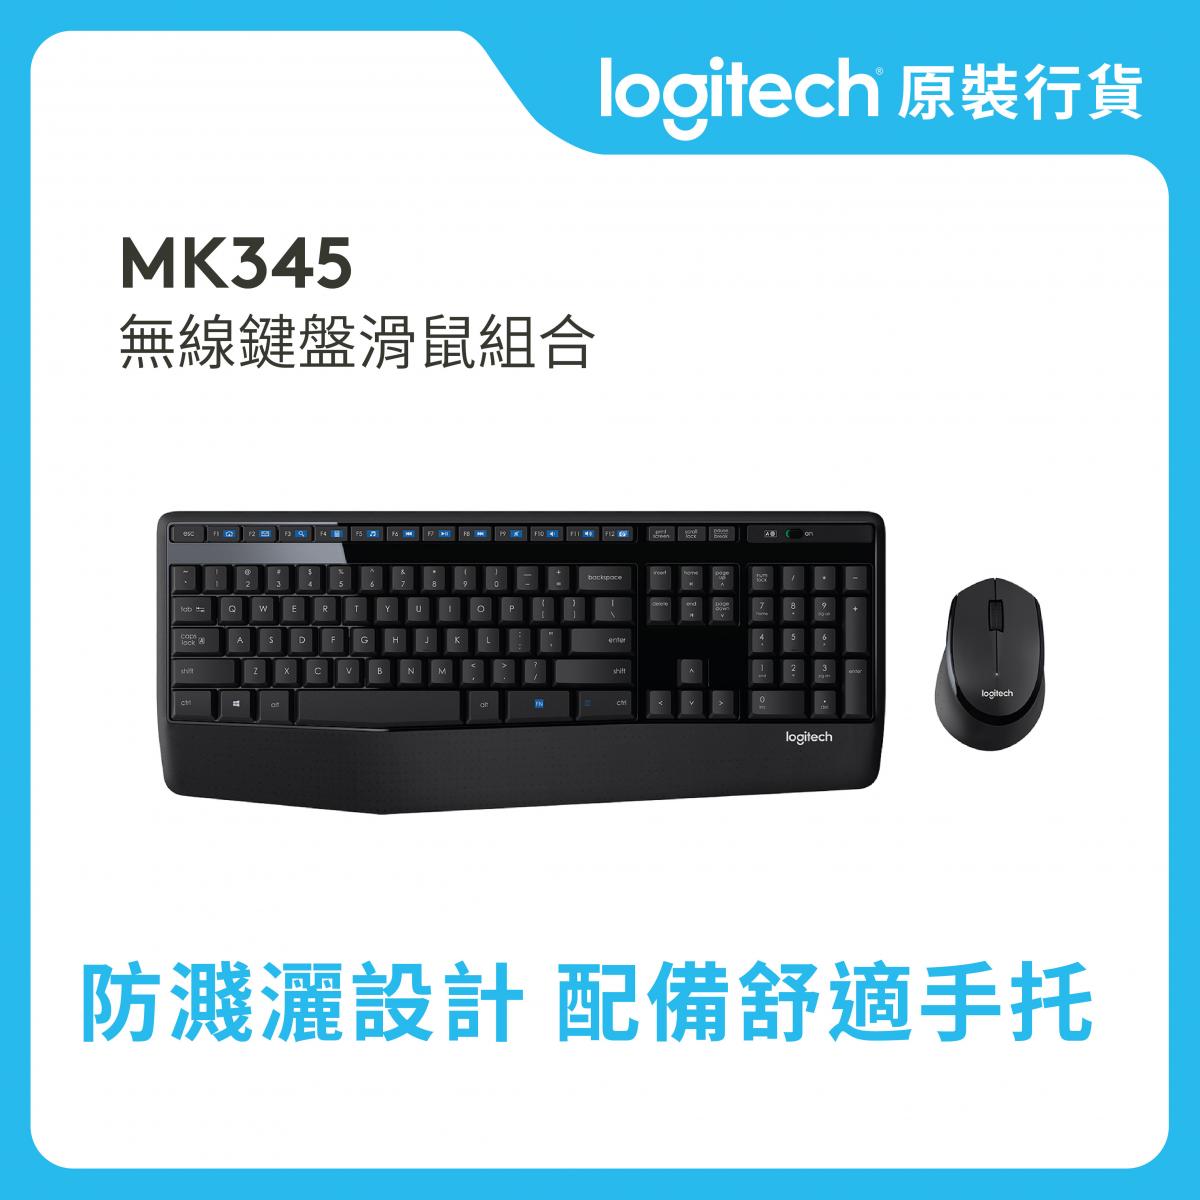 MK345 舒適無線鍵盤與滑鼠組合